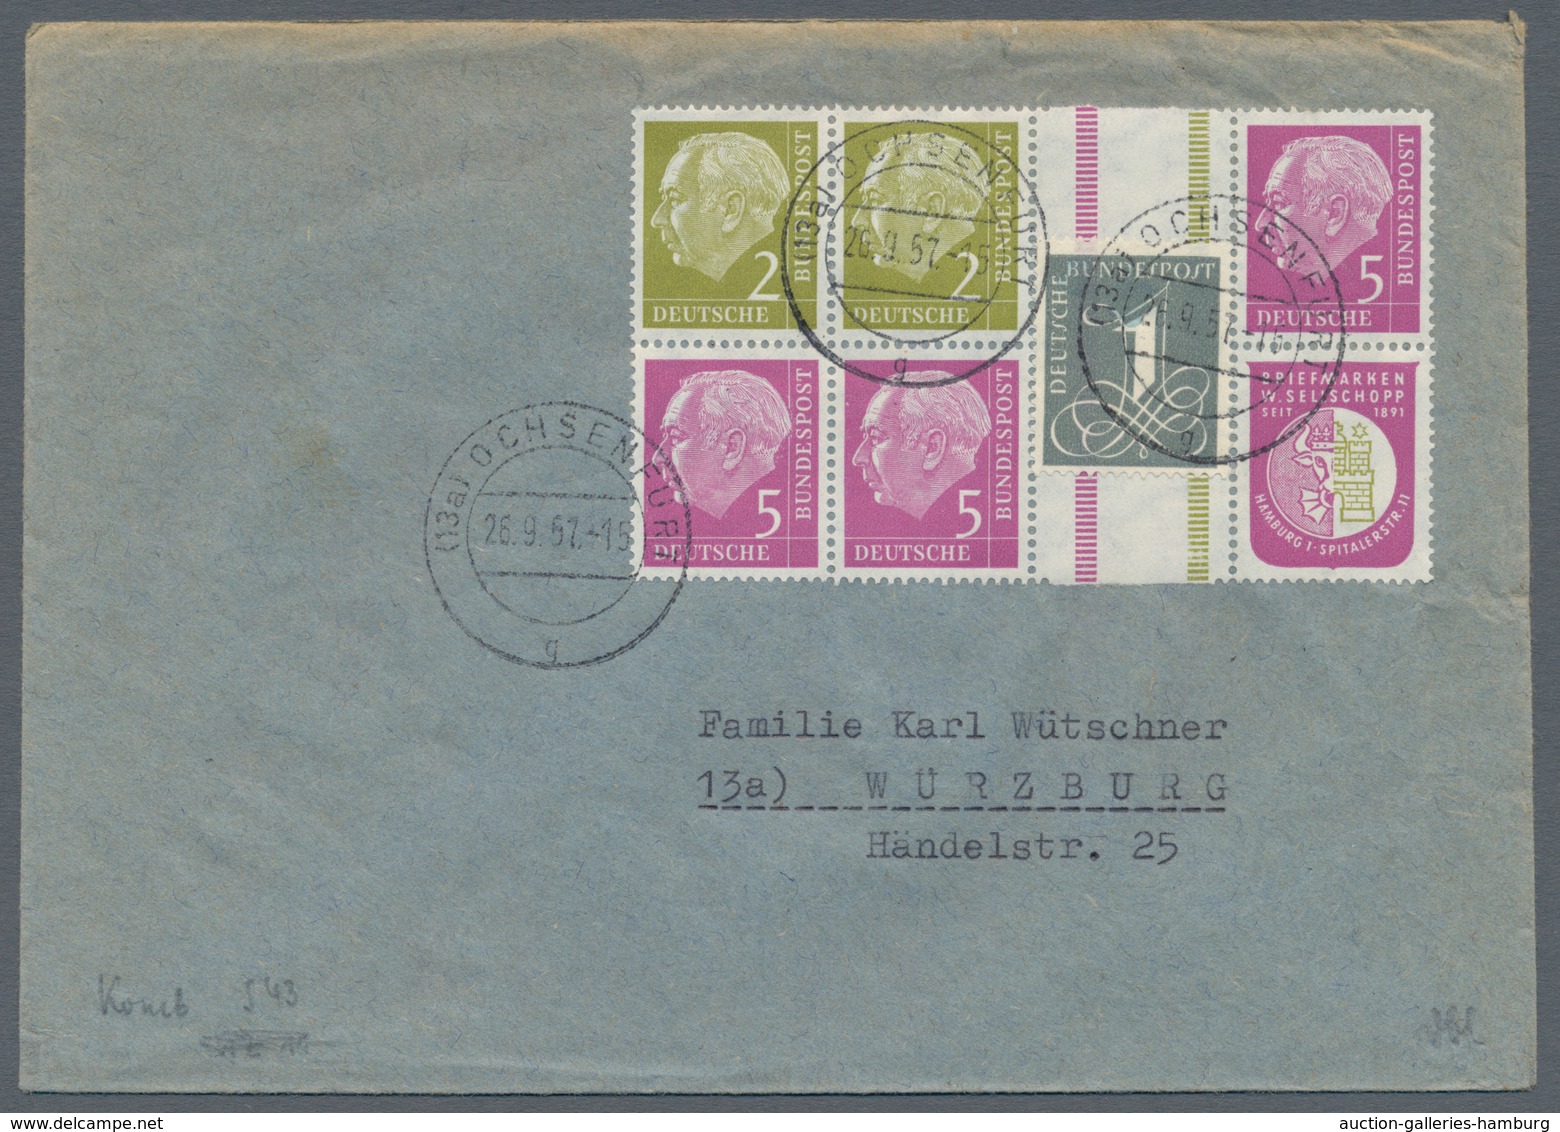 Bundesrepublik - Zusammendrucke: 1956, Heuss 1956 über weite Strecken komlett auf 20 portorichtigen